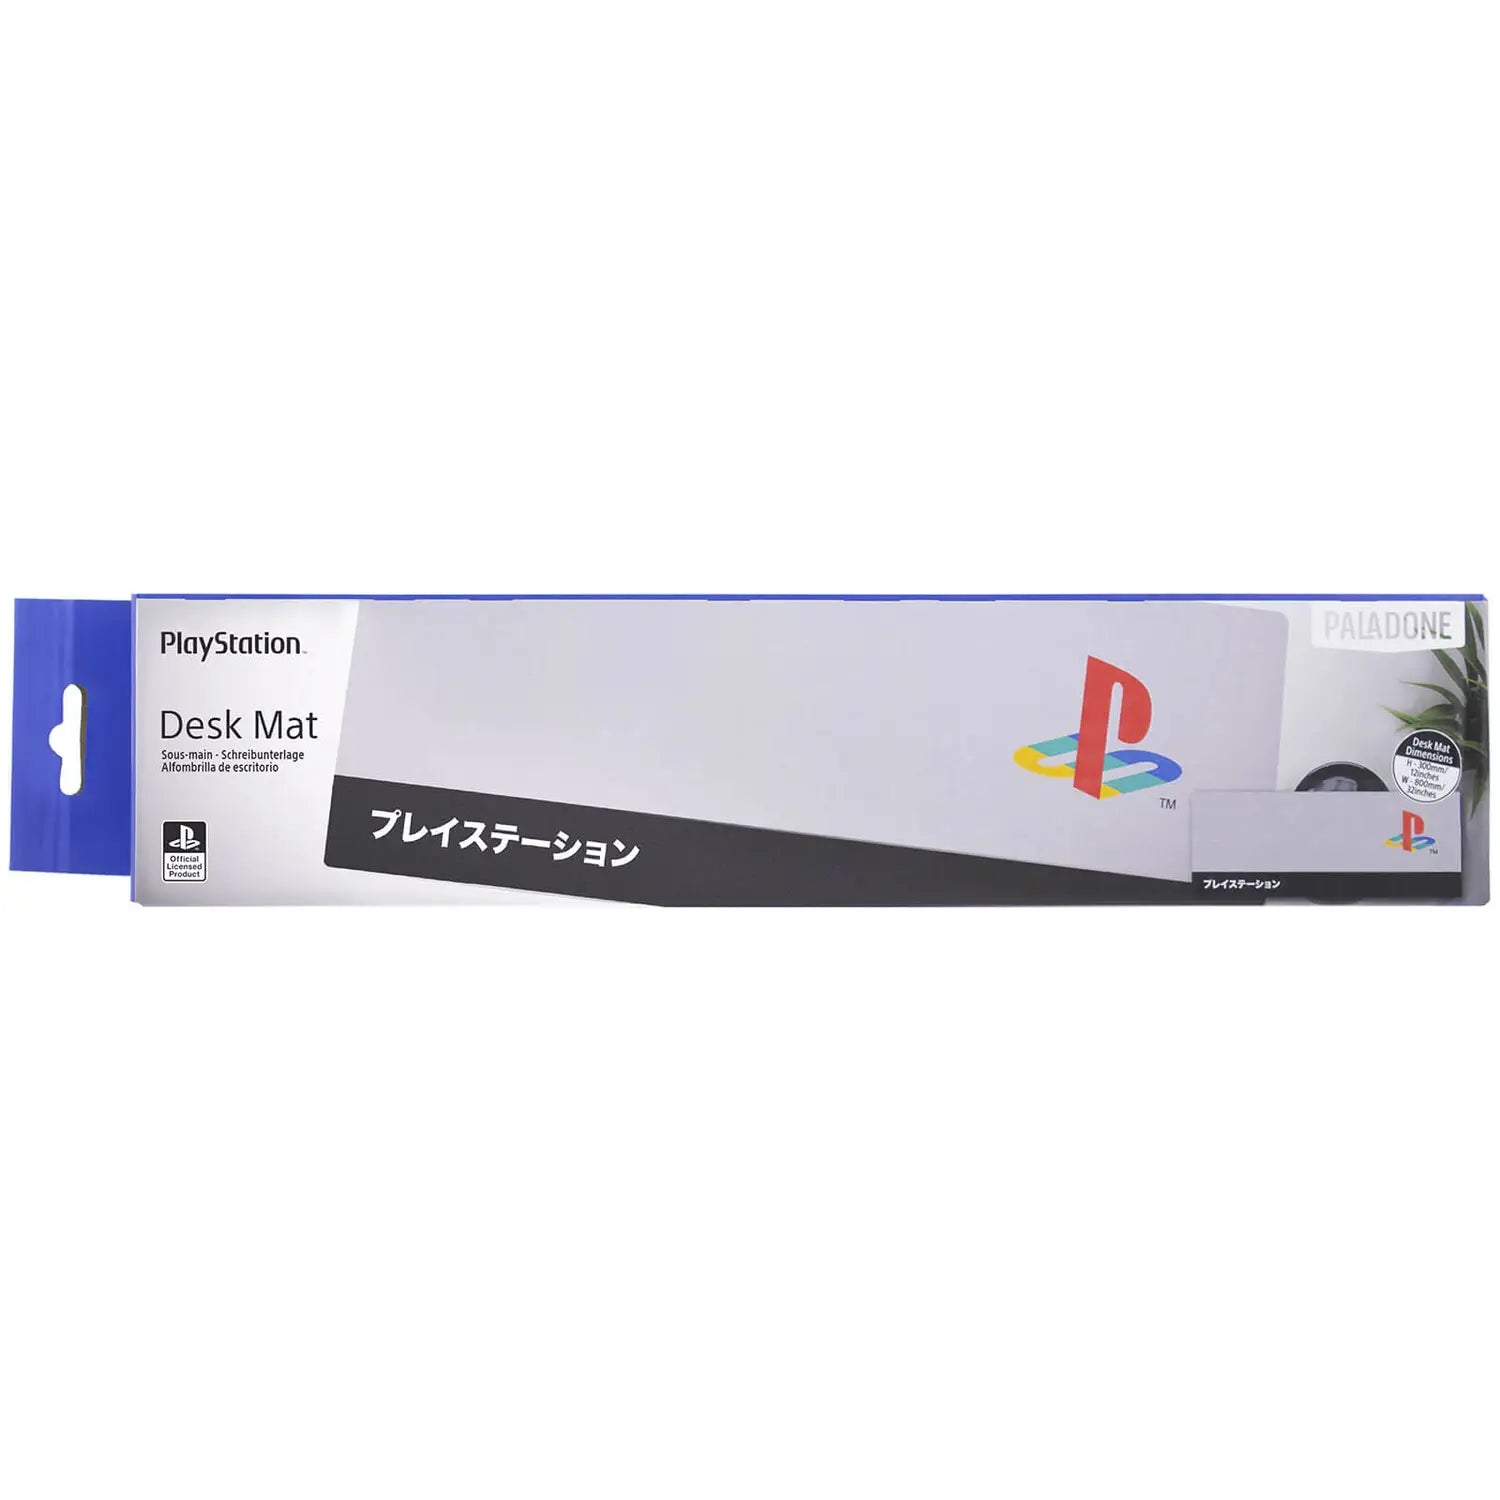 PlayStation Heritage Desk Mat